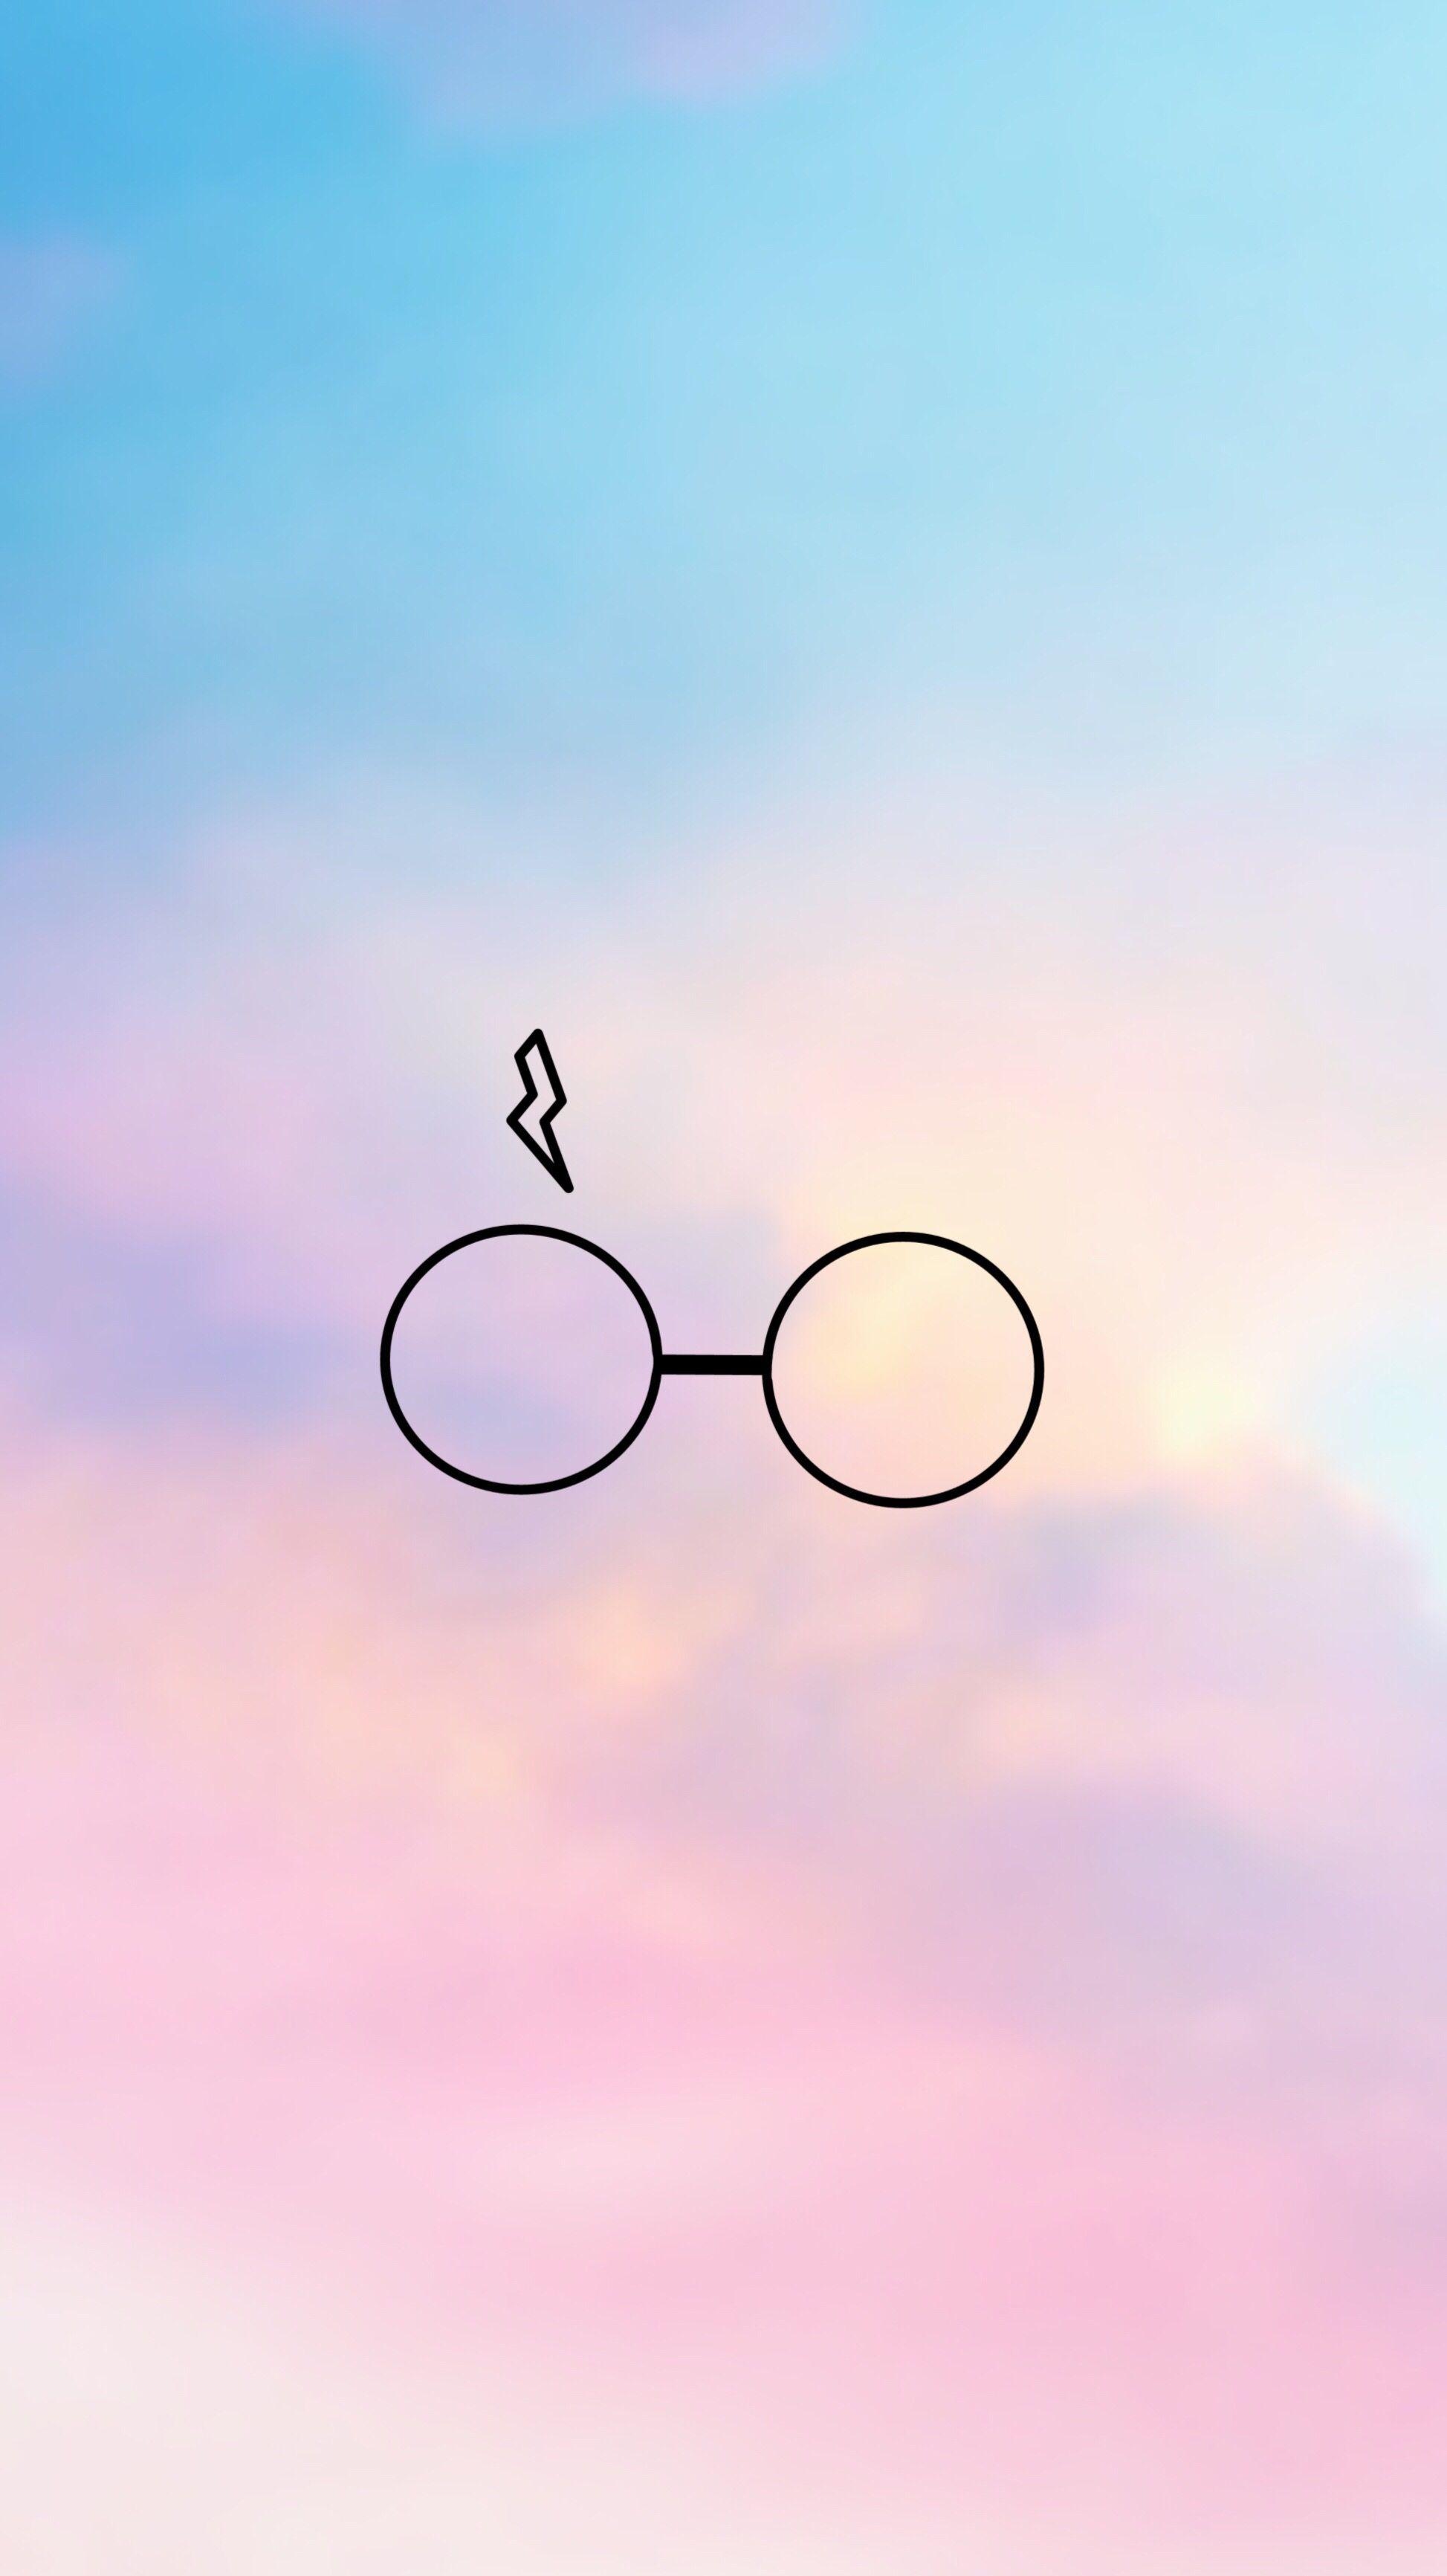 Tìm kiếm những hình nền Harry Potter hồng đẹp như mơ? Khám phá ngay bộ sưu tập hình nền Harry Potter Pink Wallpapers đầy ấn tượng và lấy cảm hứng cho màn hình máy tính của bạn.